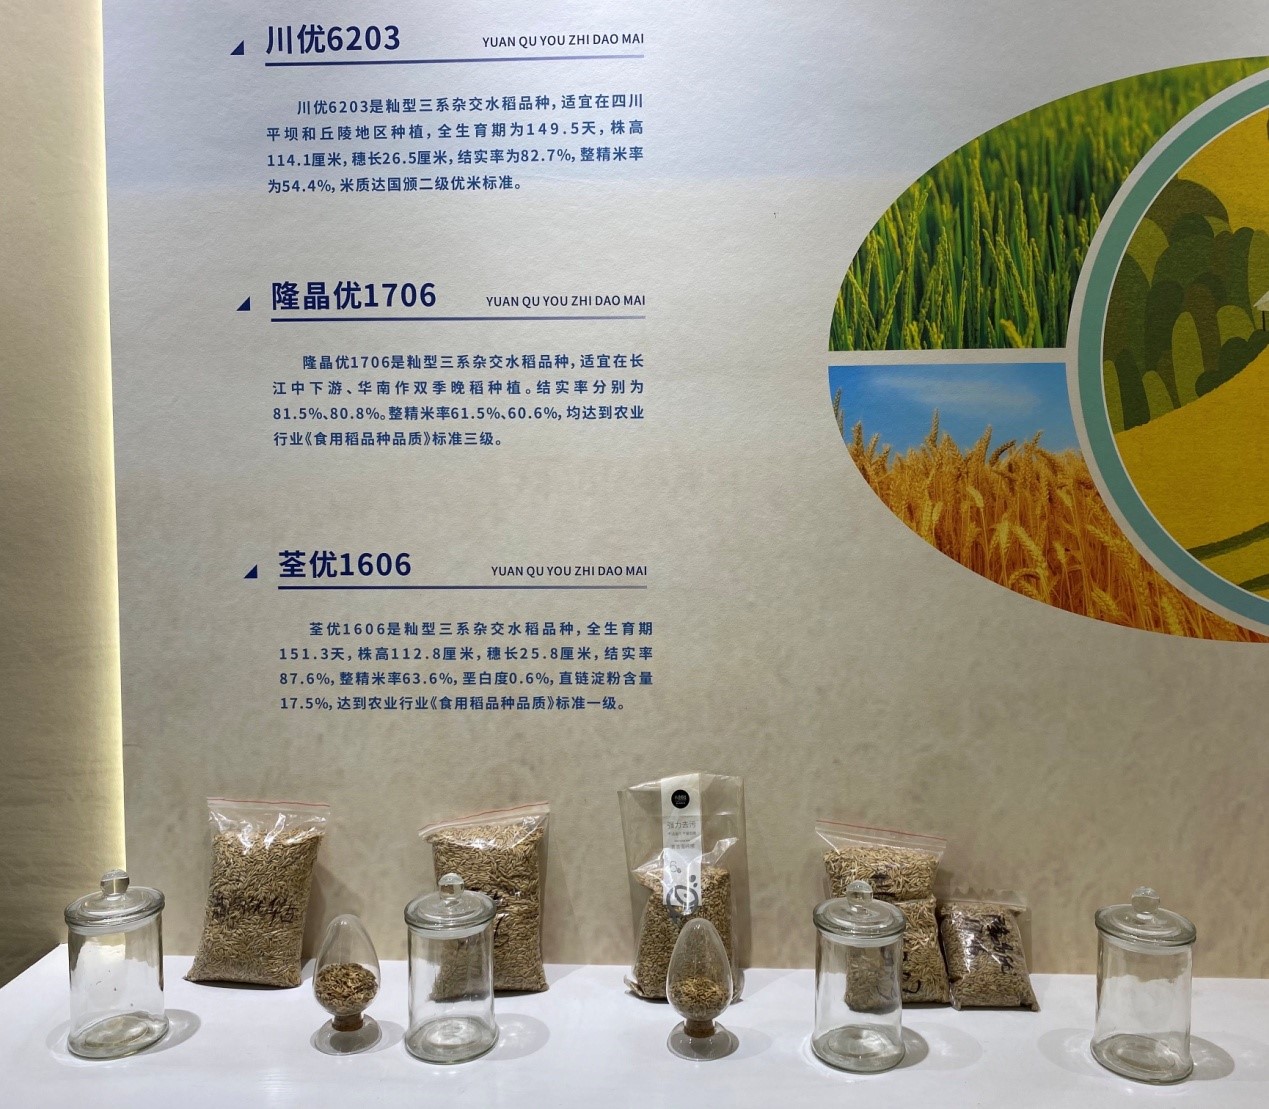 【走进区域看发展】四川德阳稻花公园：创新稻麦体验 转变农业生产模式